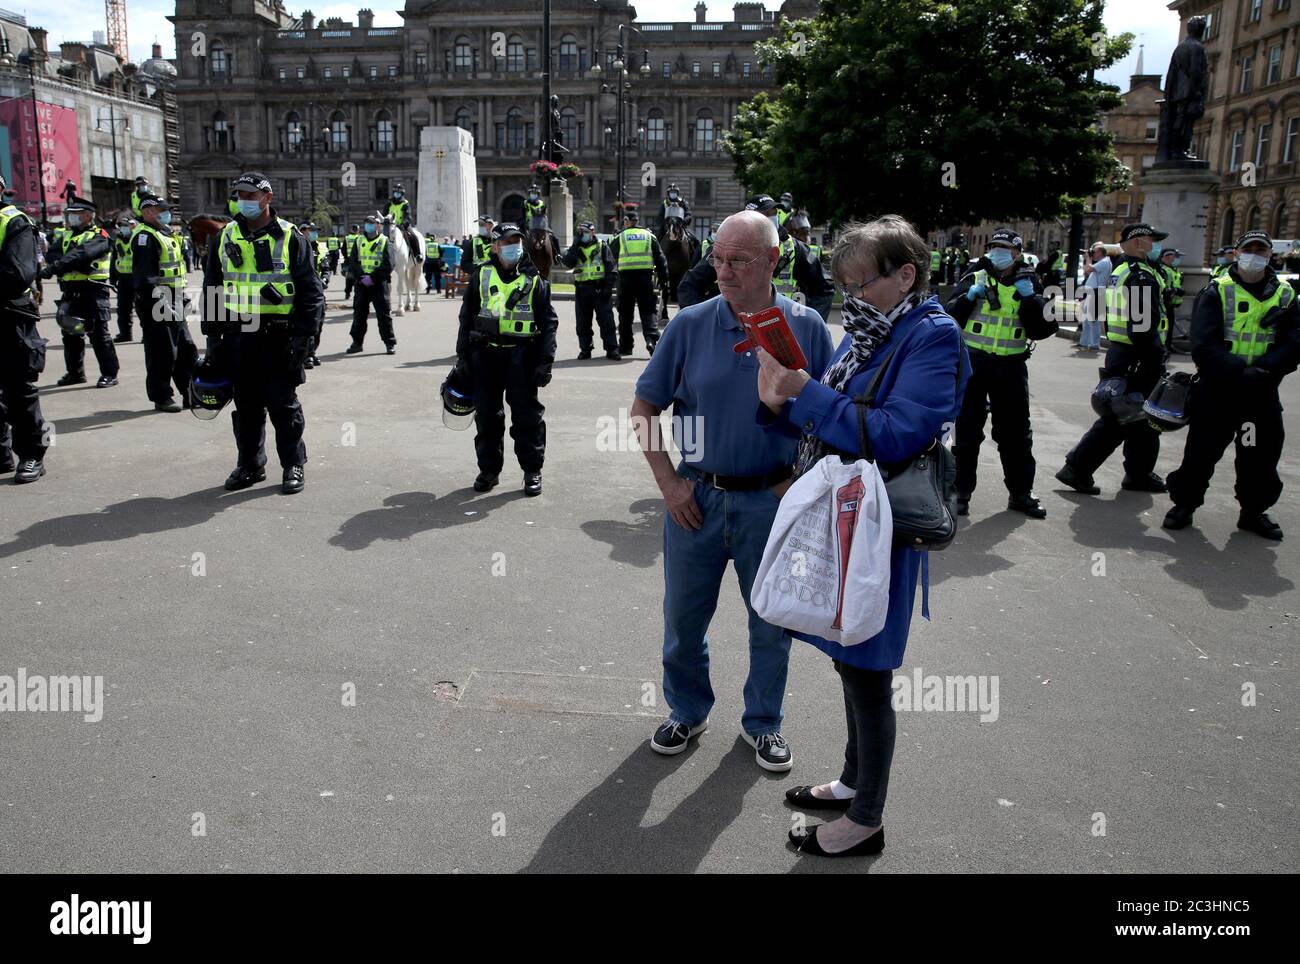 Die Polizei am George Square im Stadtzentrum von Glasgow sagte während einer Veranstaltung zum Rassismus Nein, die darauf abzielte, "eine positive antirassistische Botschaft vom George Square in Glasgow an die Welt am Weltflüchtlingstag zu senden". Stockfoto